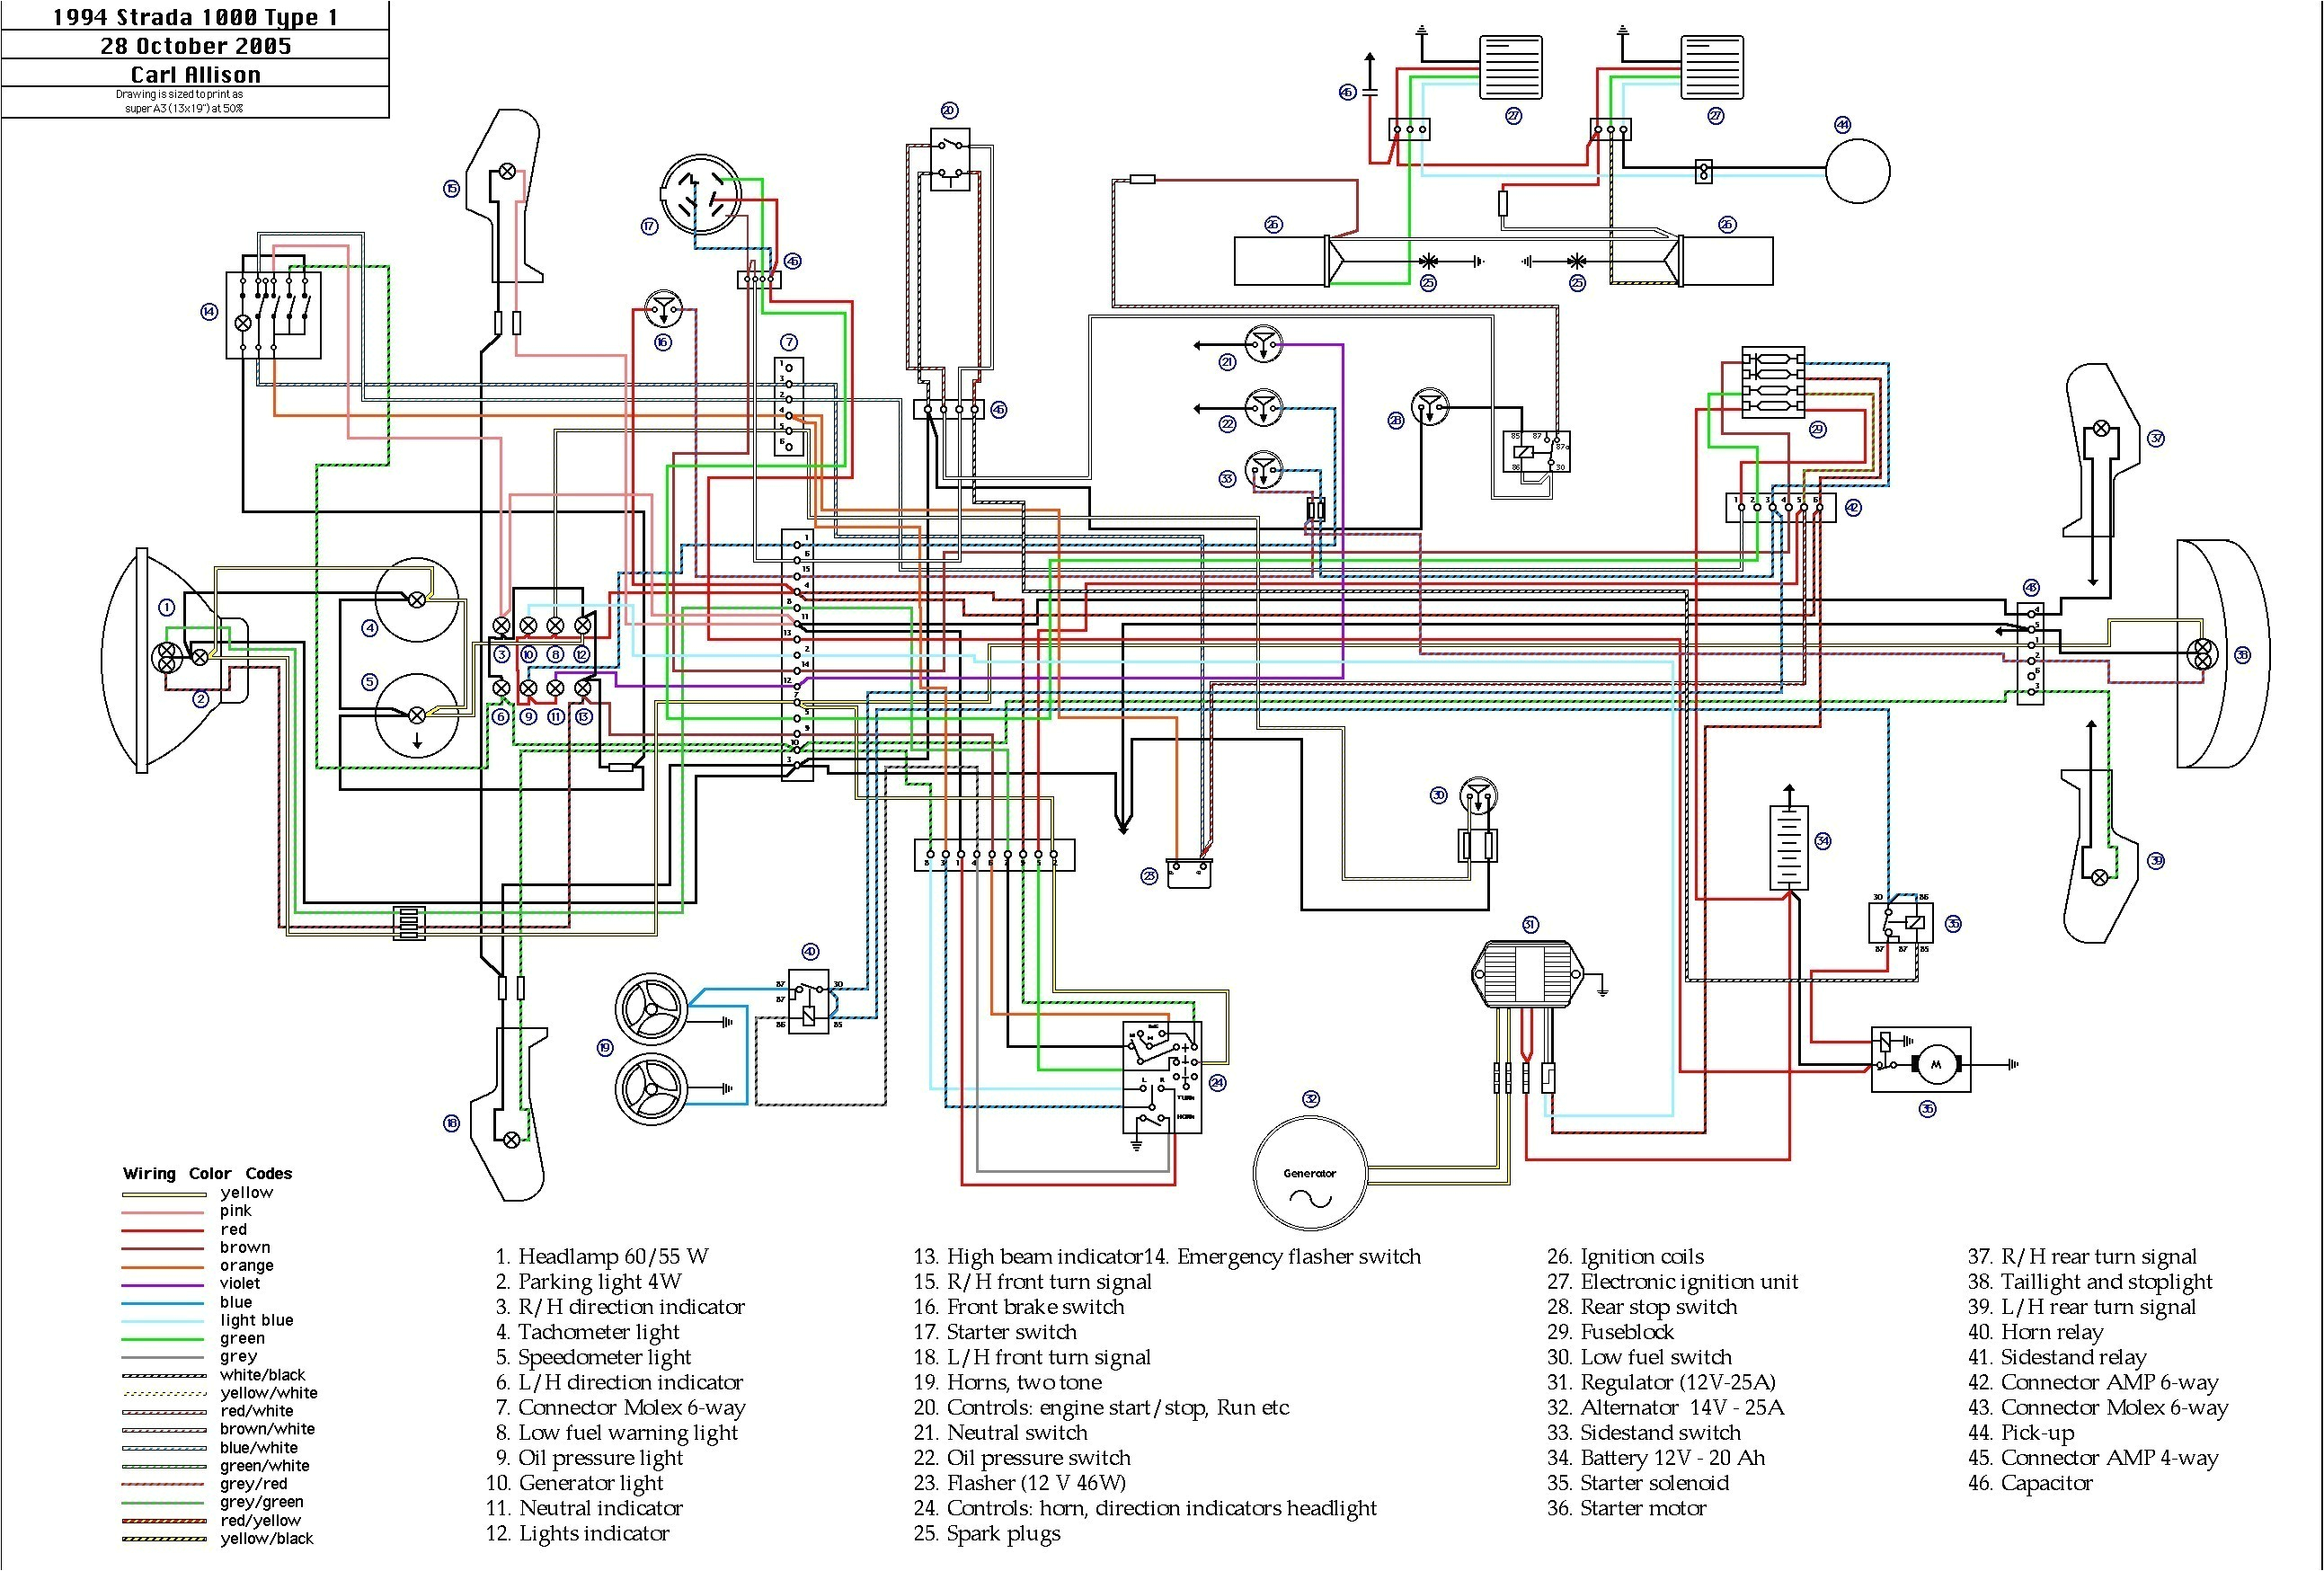 opel engine diagrams wiring diagram post opel vectra engine diagram opel engine diagram